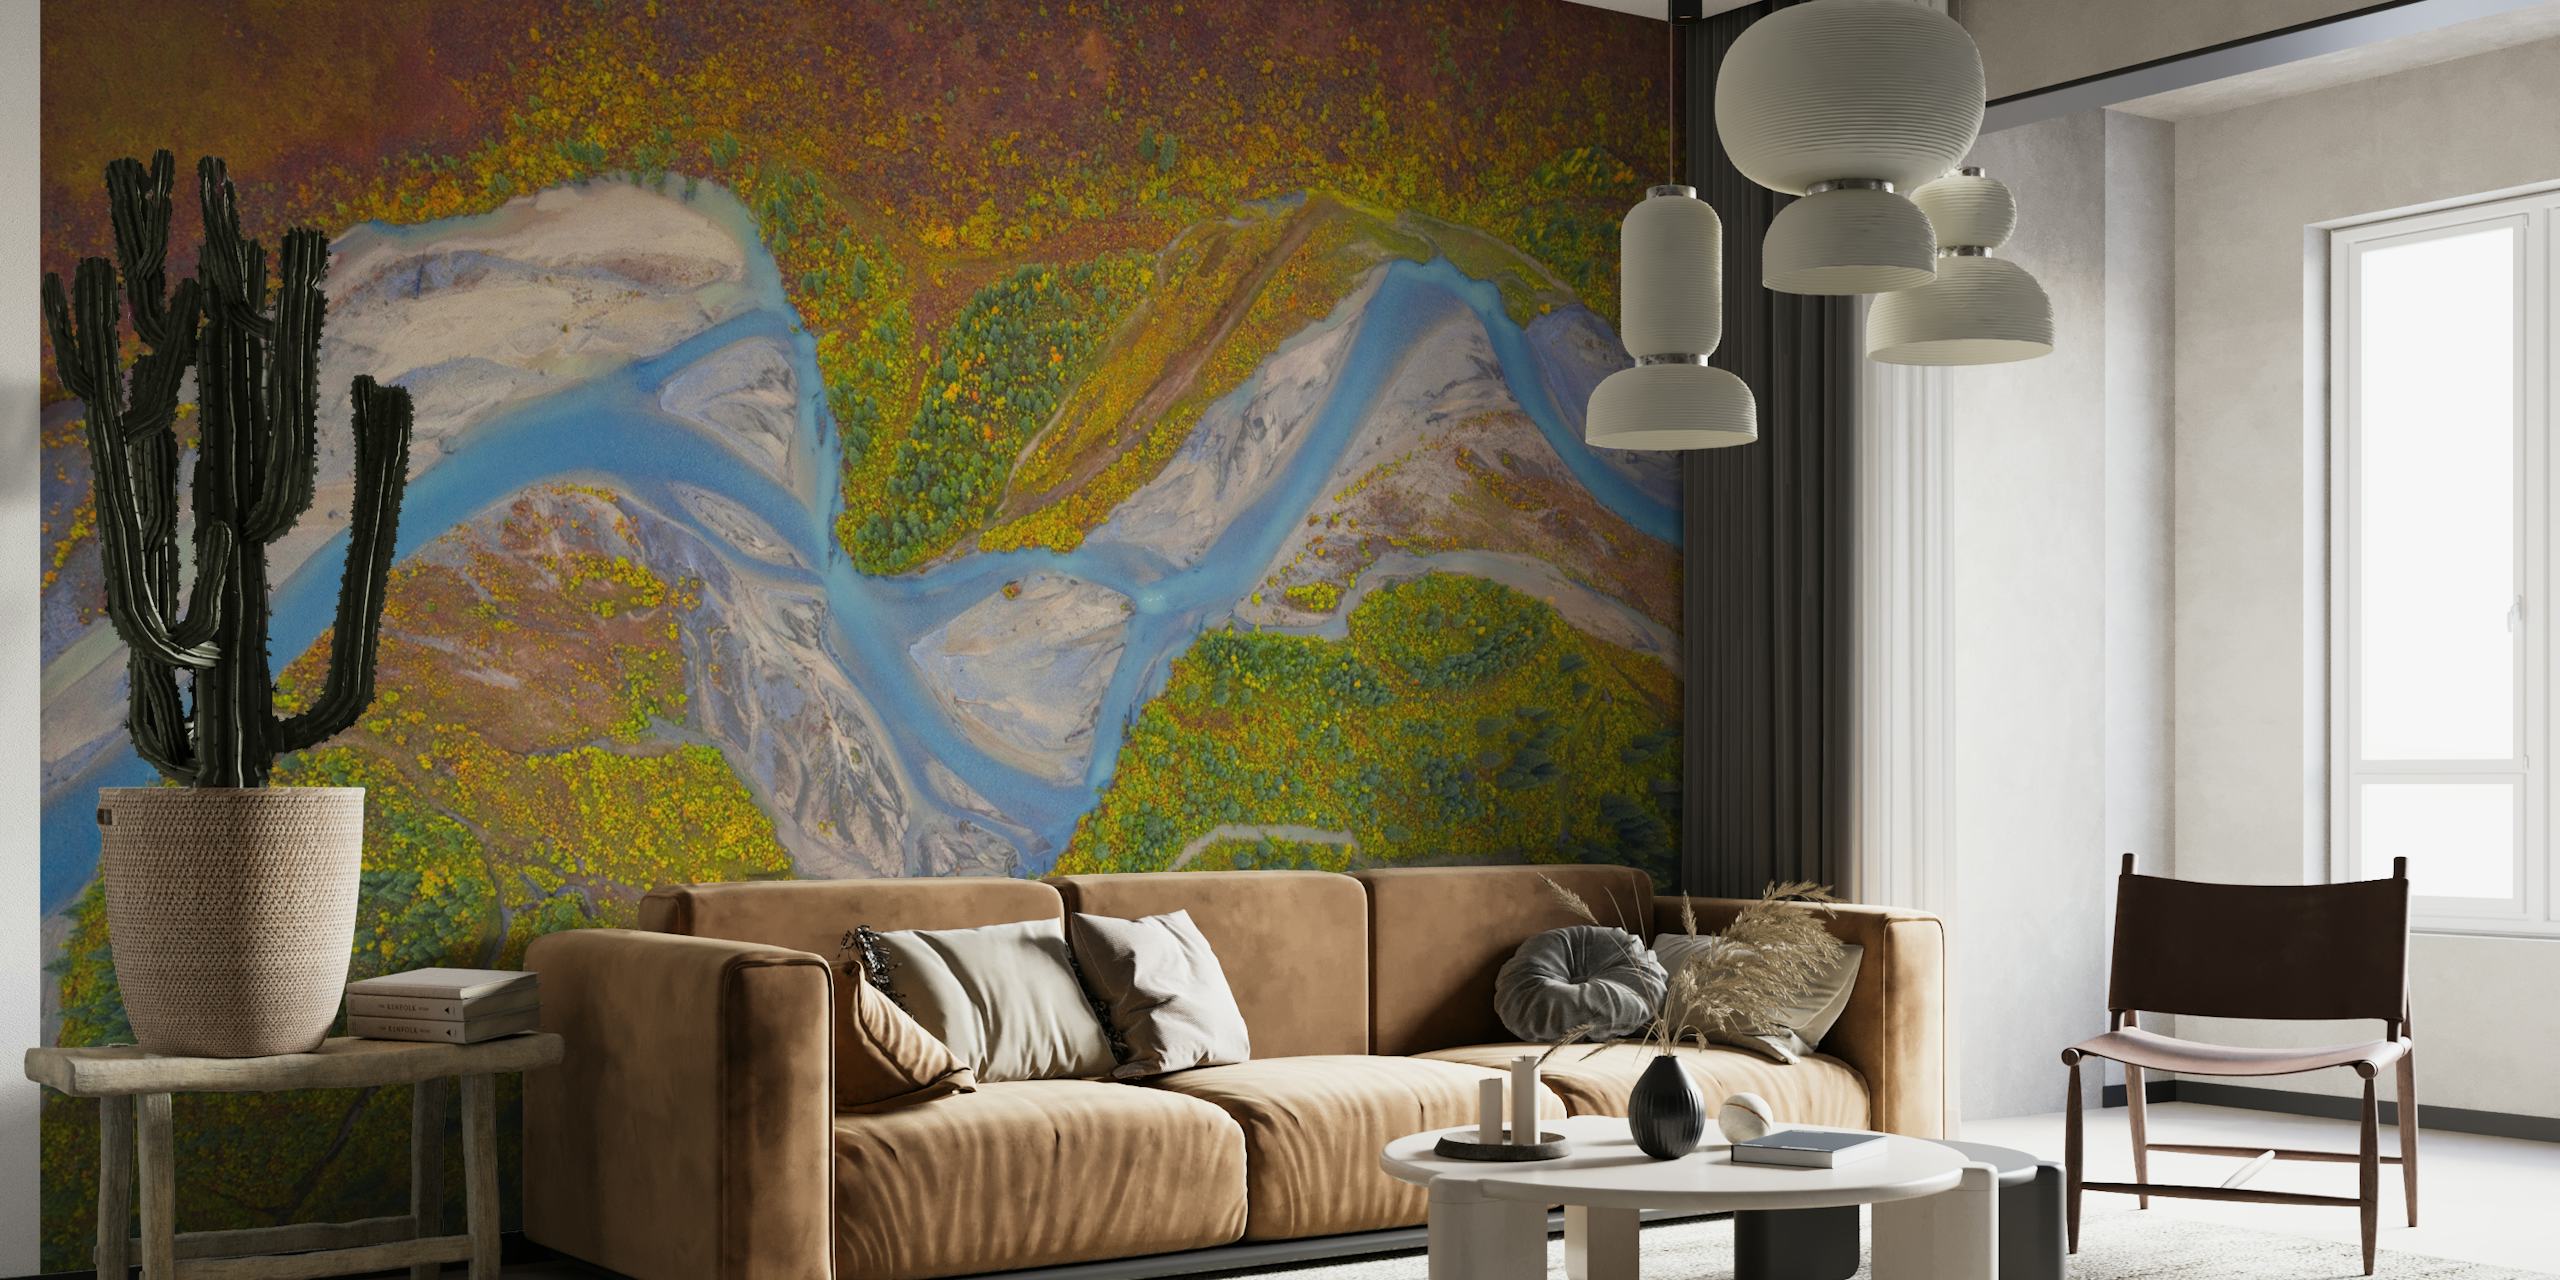 Mural de parede do Rio Matanuska com paisagem cênica do Alasca, apresentando um rio sinuoso e prados coloridos